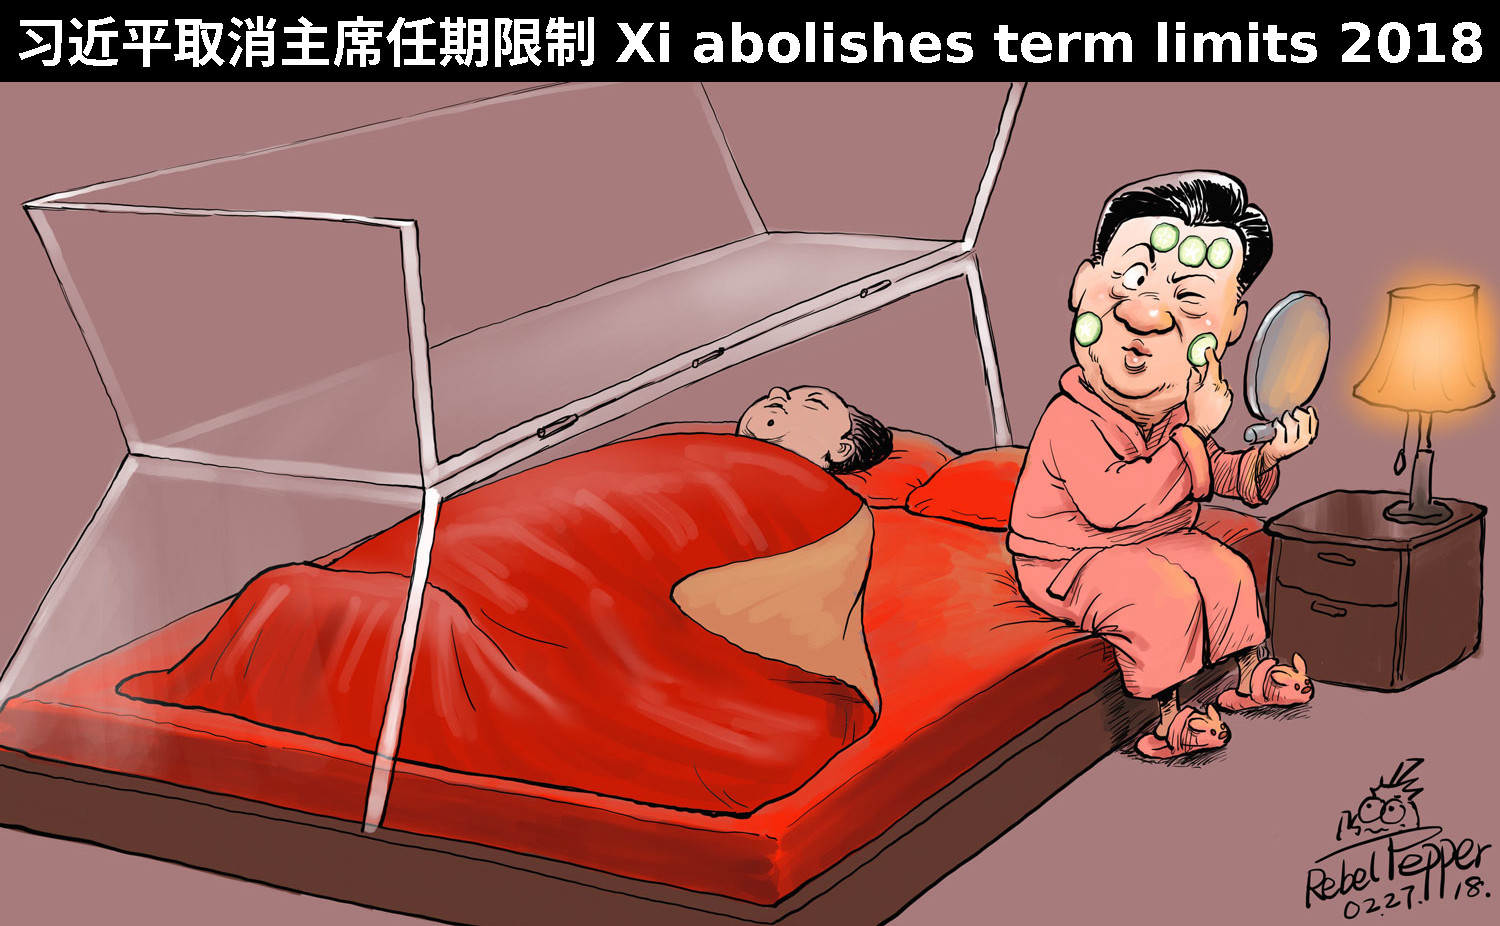 Xi sleep Mao